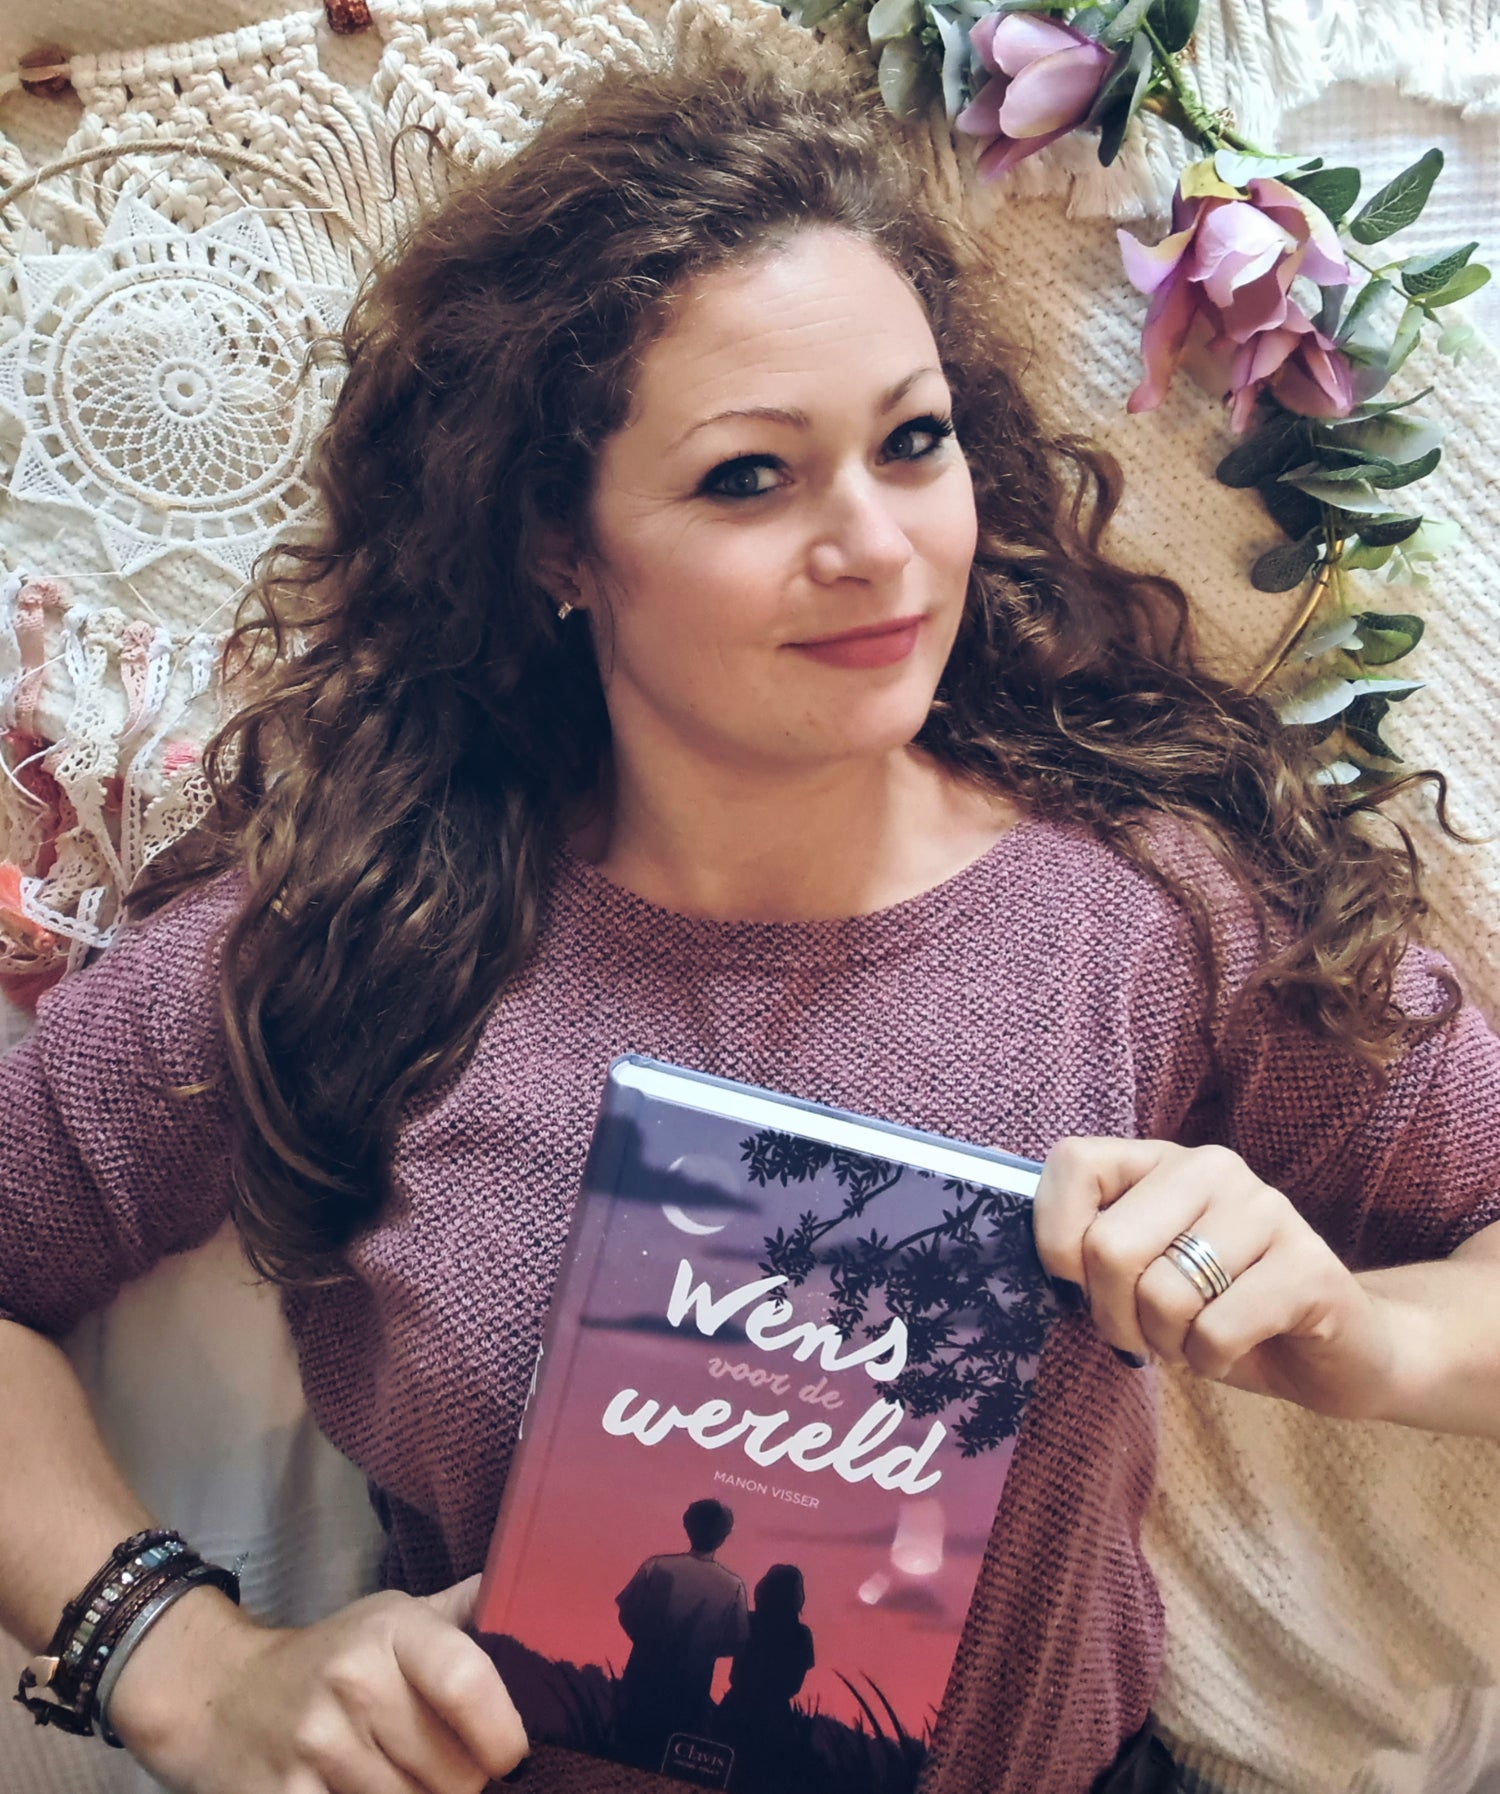 boekenliefhebber met een boek met de titel wens voor de wereld in haar handen